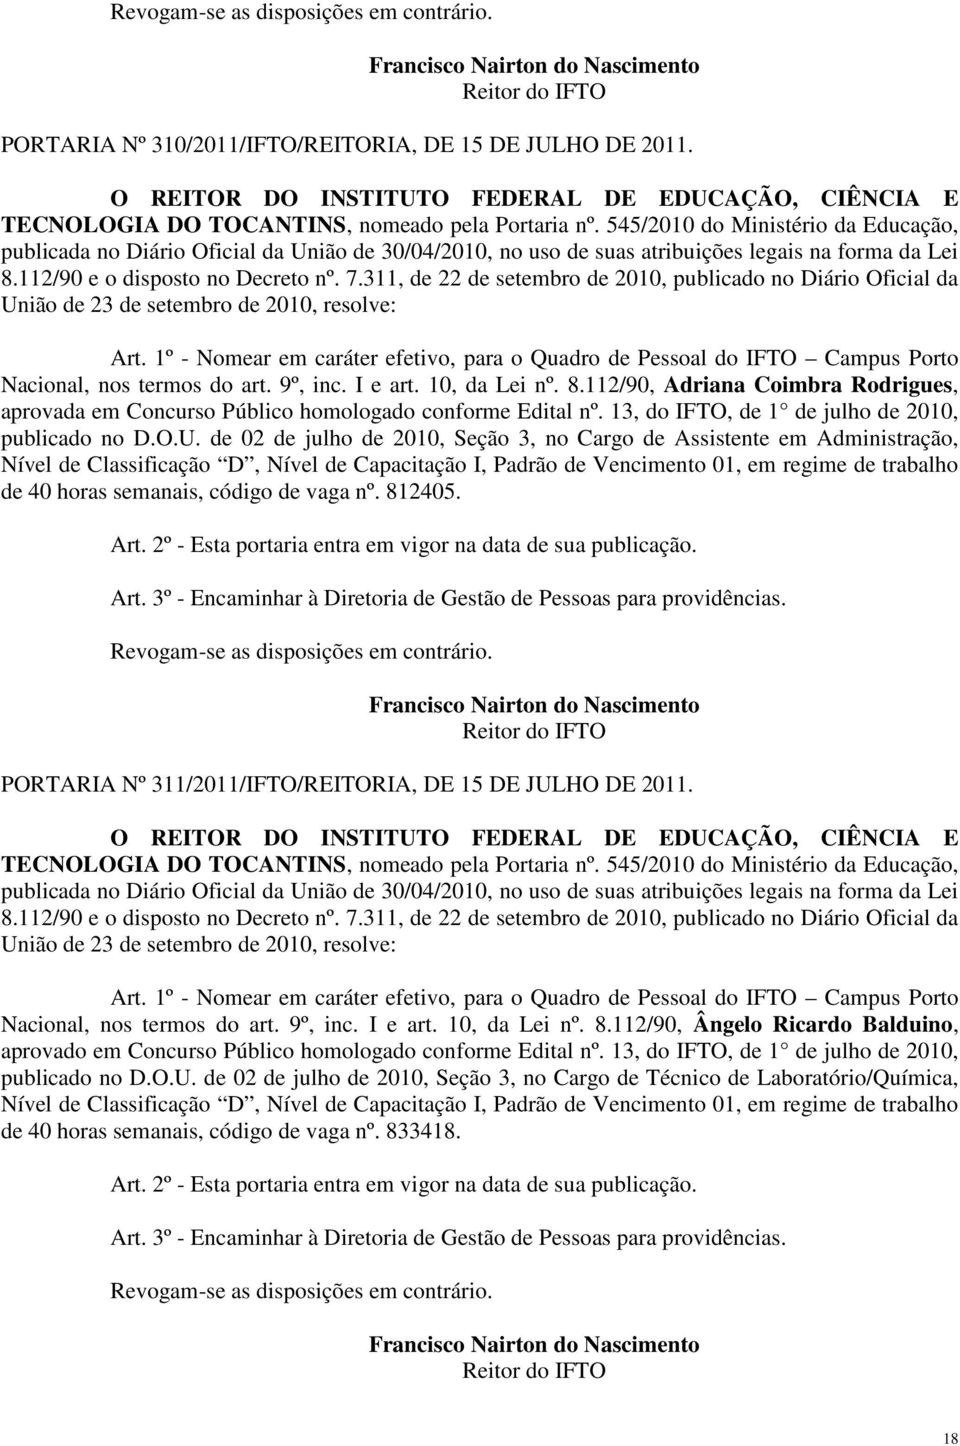 1º - Nomear em caráter efetivo, para o Quadro de Pessoal do IFTO Campus Porto Nacional, nos termos do art. 9º, inc. I e art. 10, da Lei nº. 8.